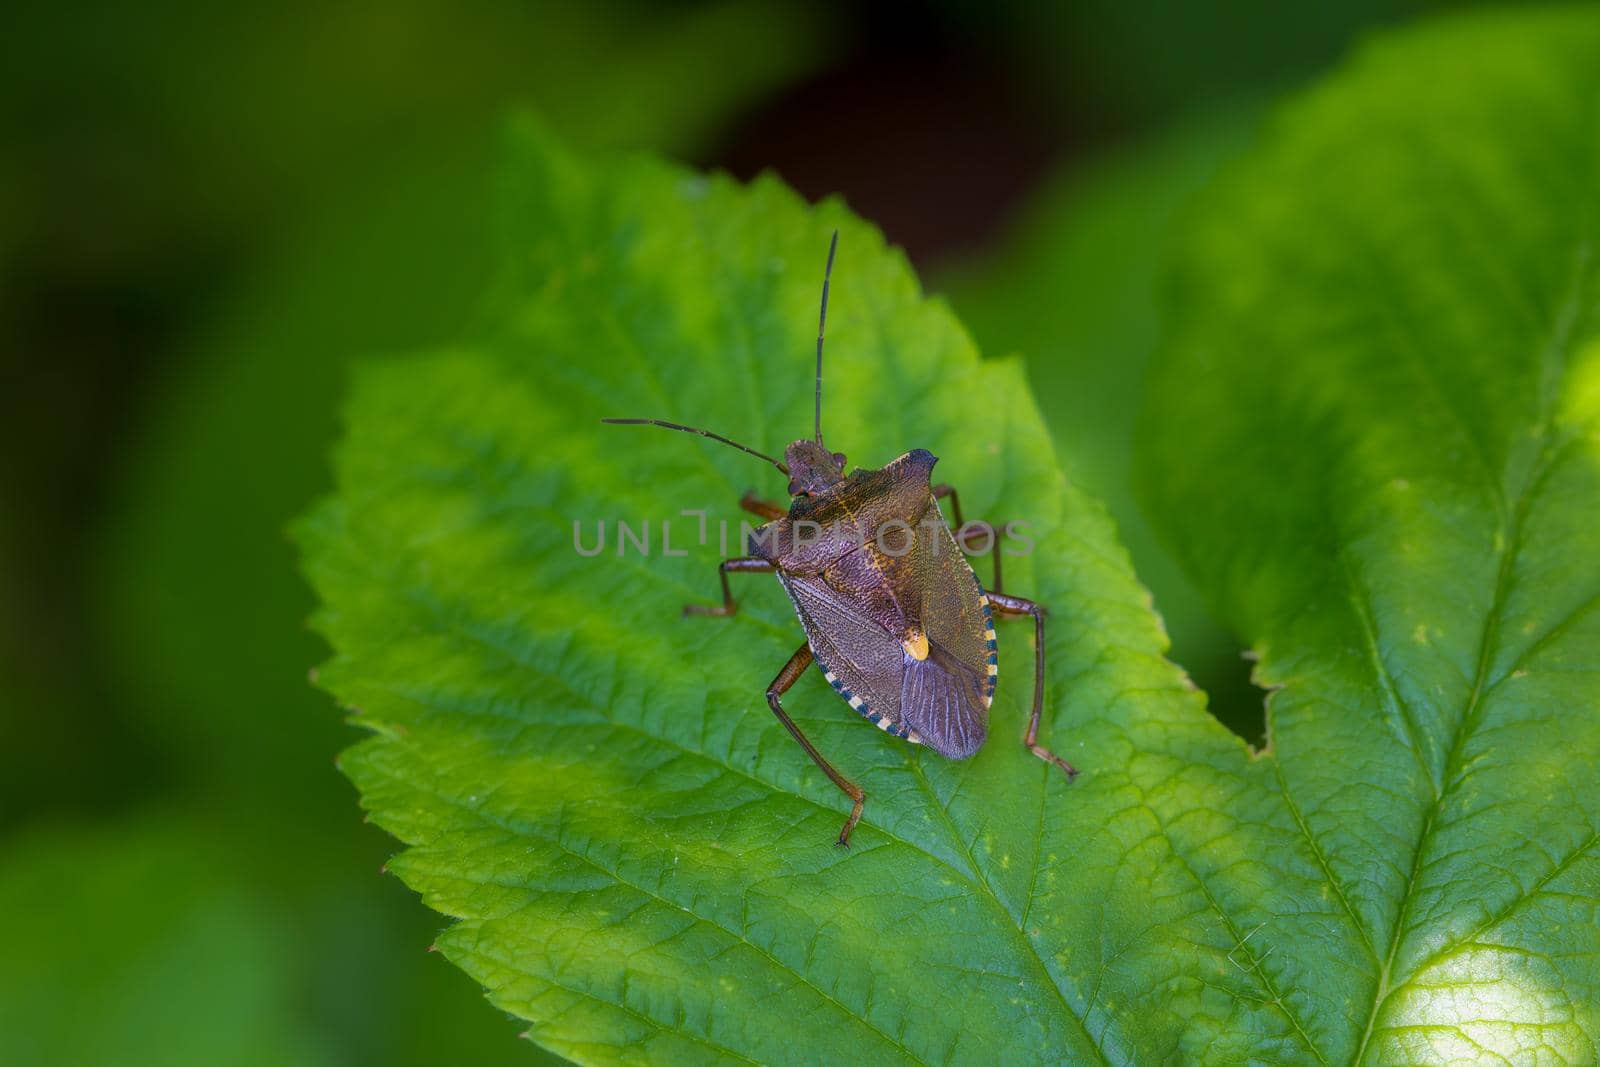 Forest Bug or Red-Legged Shieldbug, Pentatoma rufipes